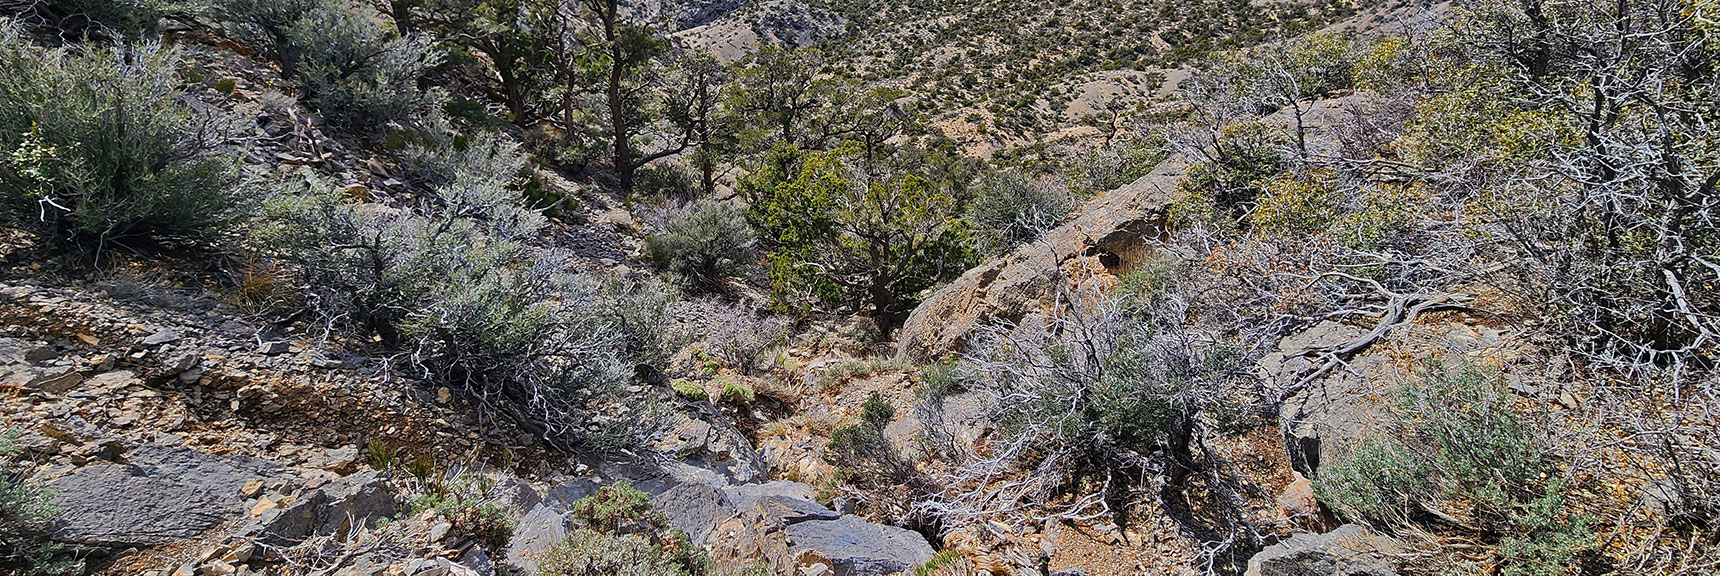 Weave Through Brush, Trees, But Very Gradual, Easy Walk. | Damsel Peak Loop | Gateway Peak | Brownstone Basin, Nevada